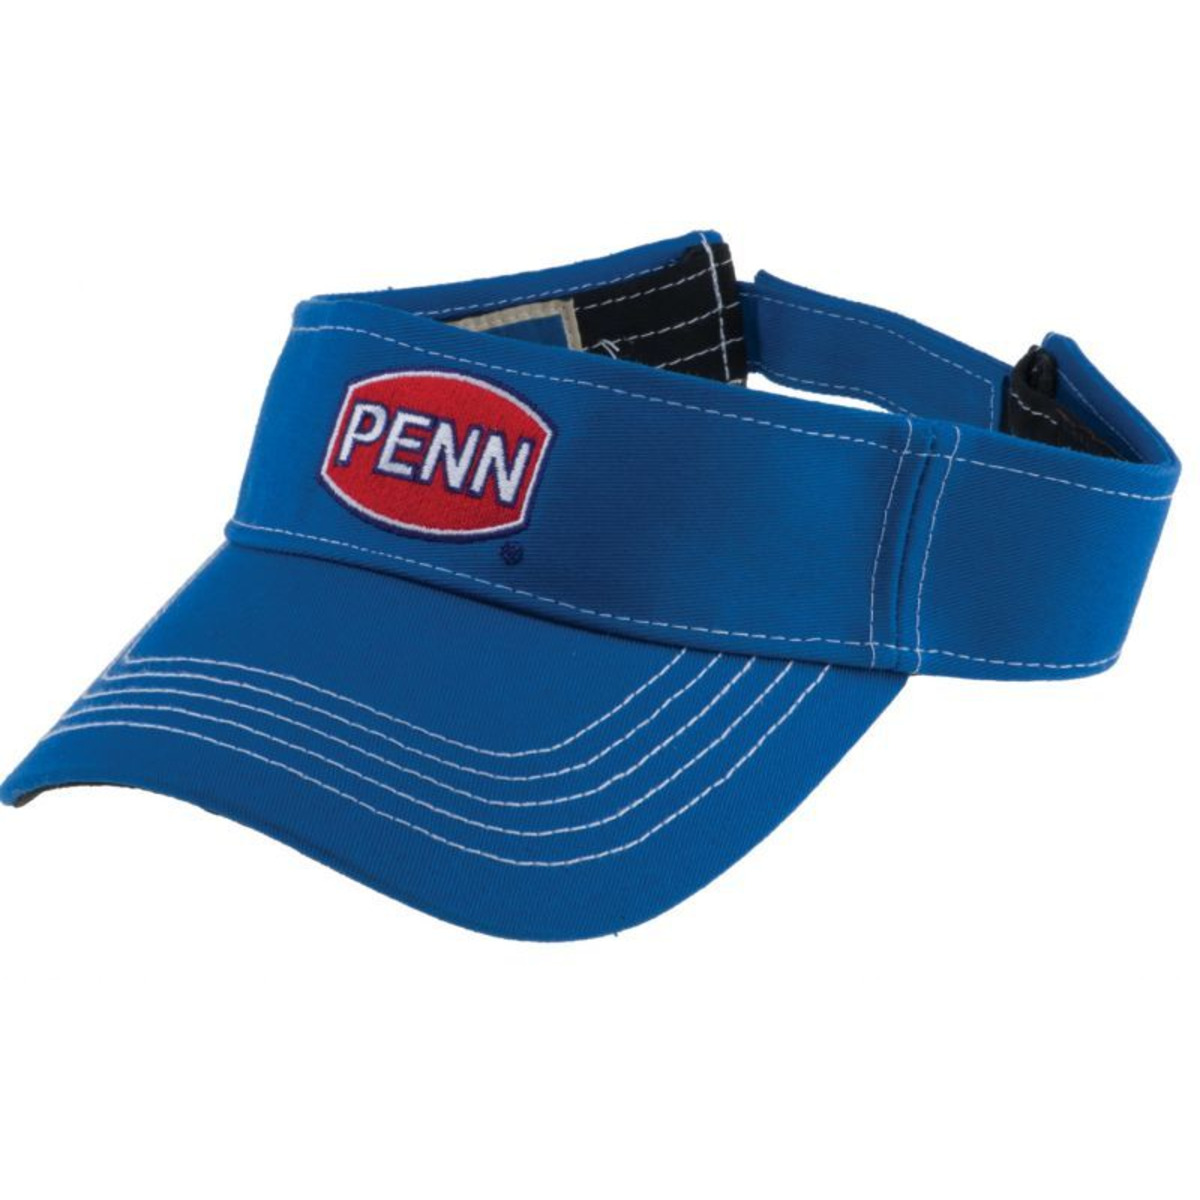 Penn Visor - Blue